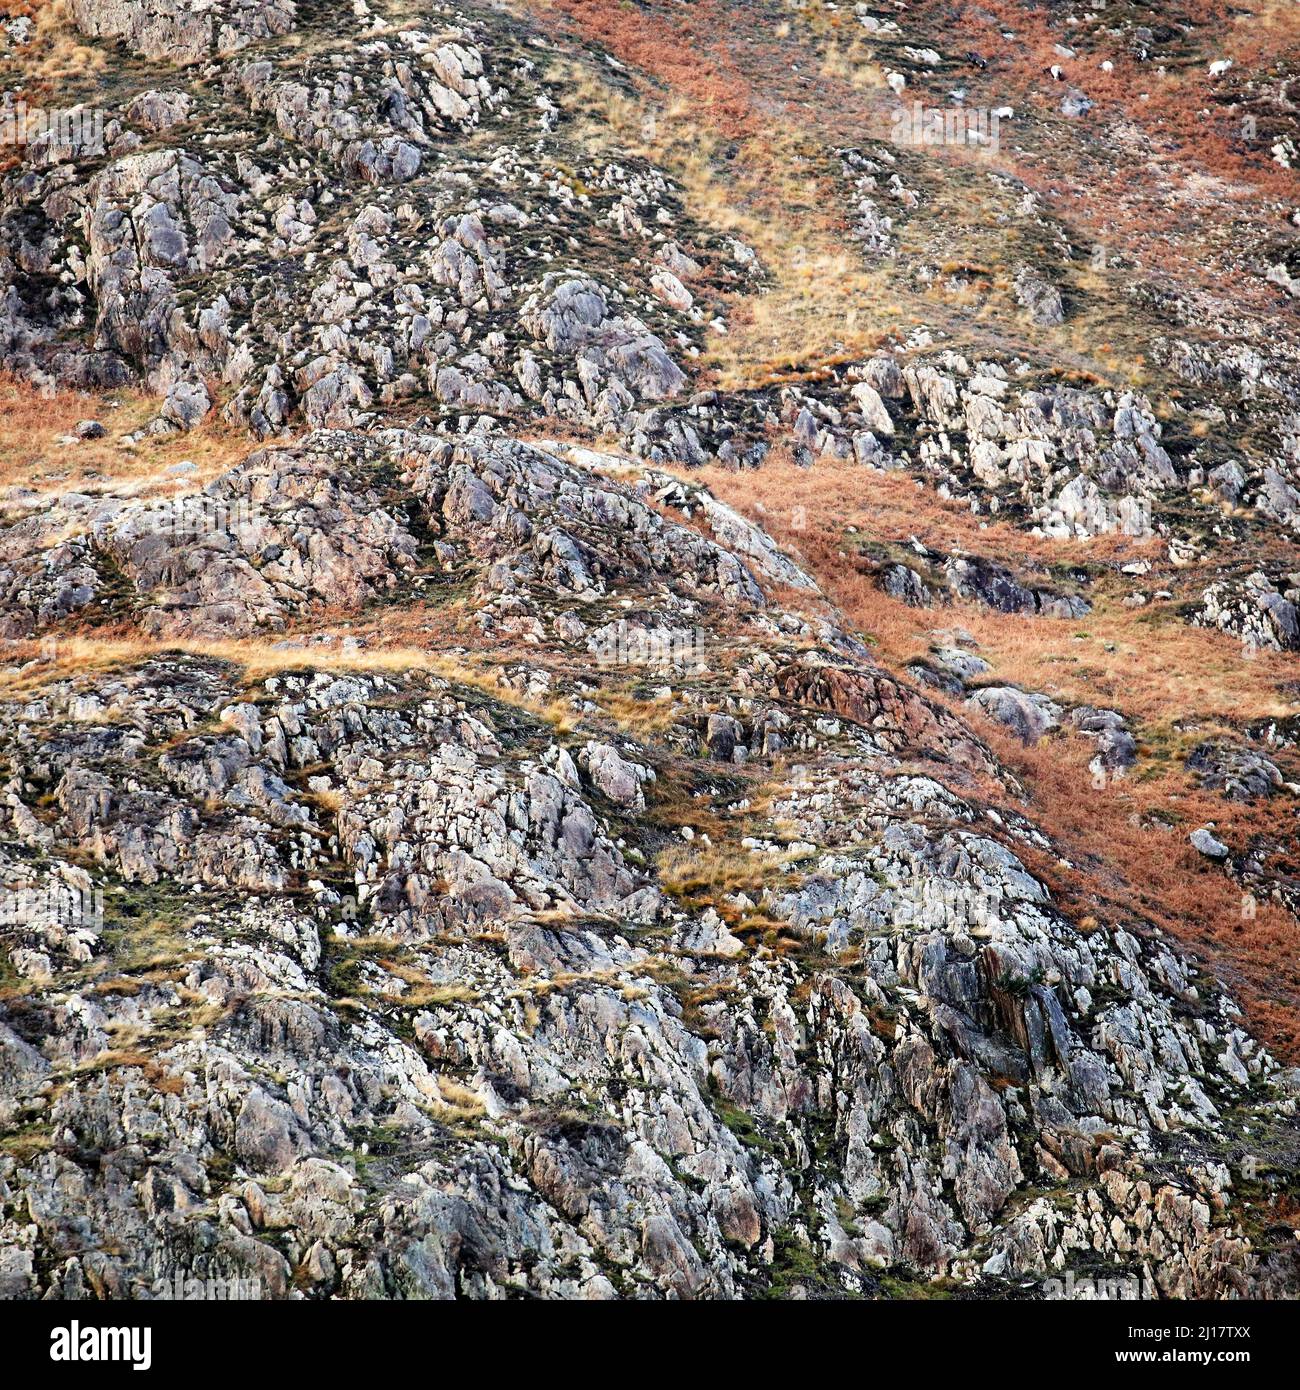 Naturfoto der Geologie, das zufällige Muster, Textur, Form zeigt, mit einer subtilen Farbpalette in einem halbabstrakten Stil im Nantgwynant Valley Stockfoto